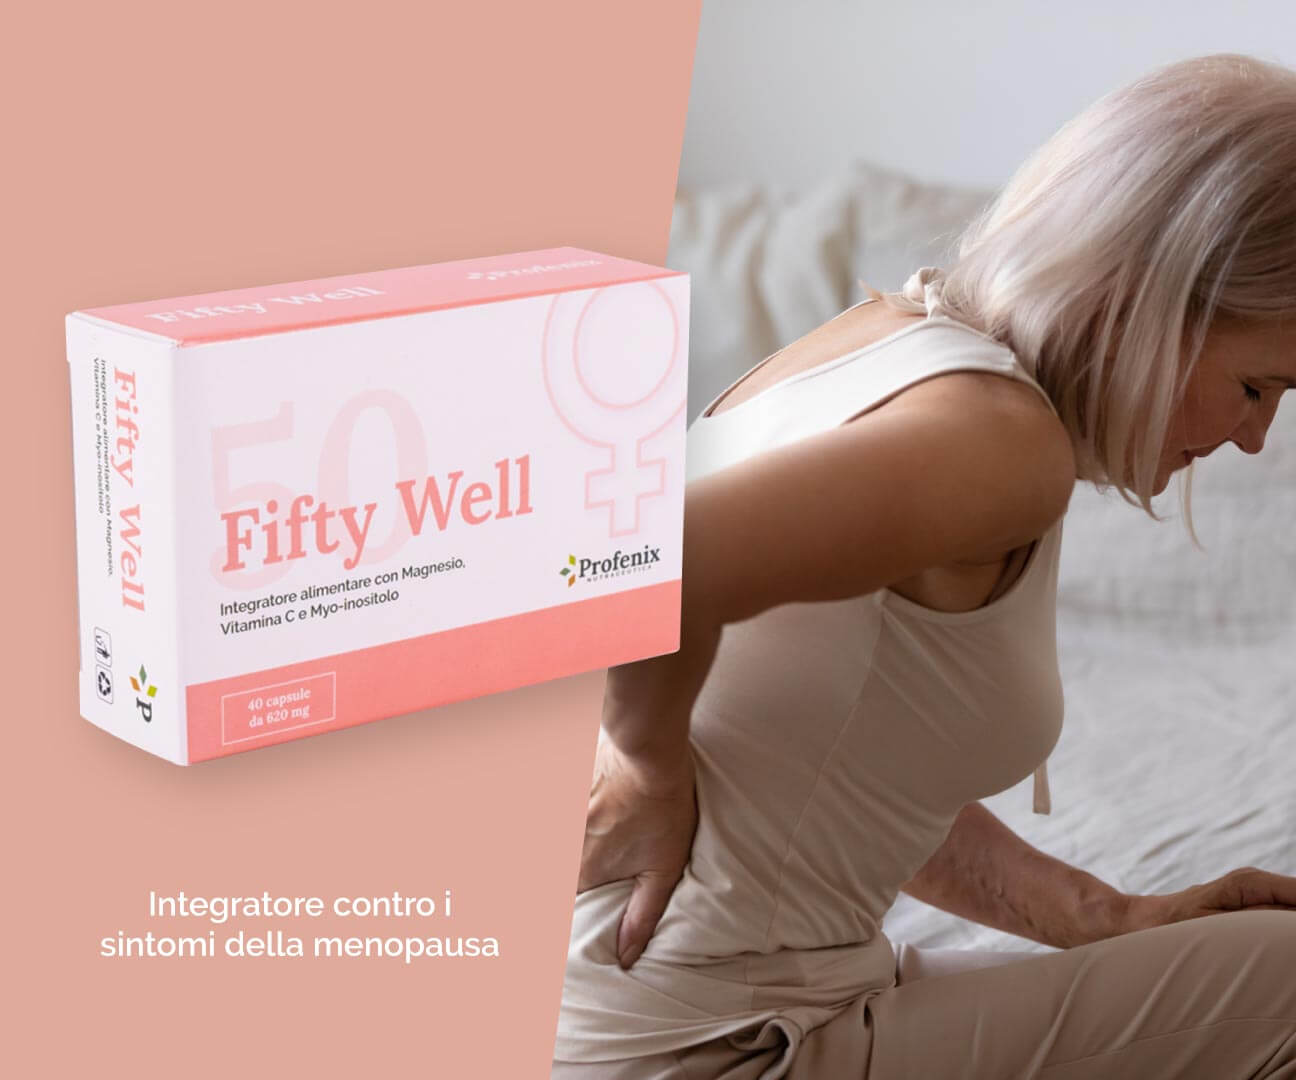 FIFTY WELL integratore contro i sintomi della menopausa